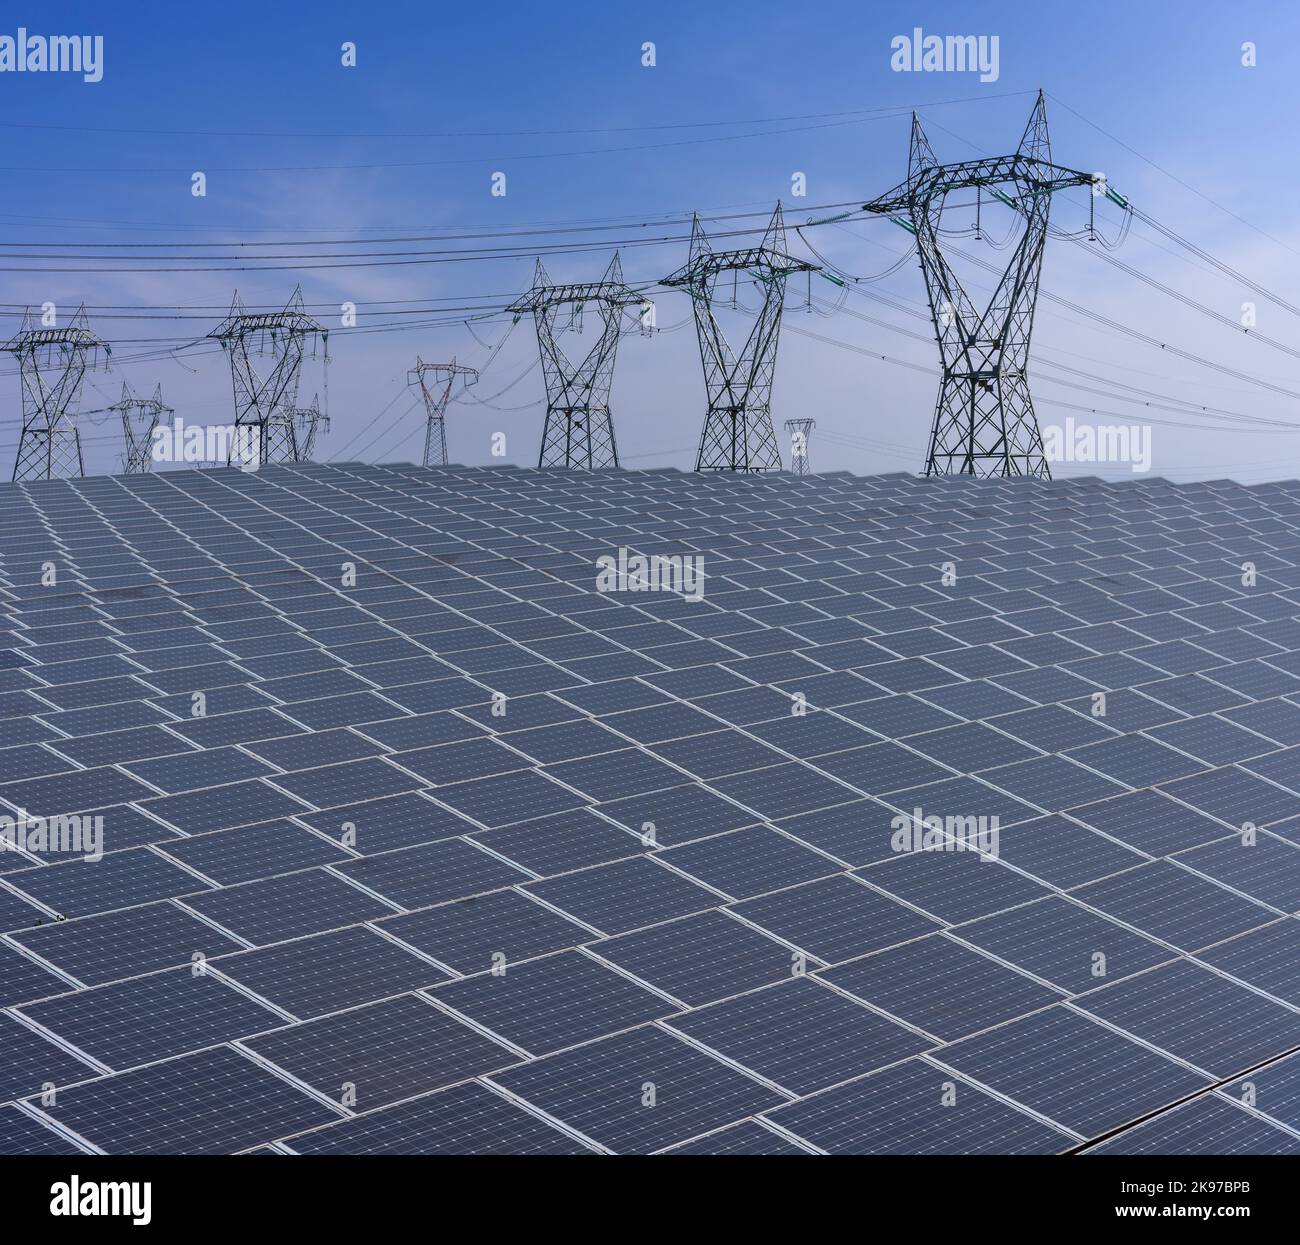 Sonnenkollektoren mit Hochspannungsmasten am blauen Himmel, Elektrizitätsproduktionsanlage mit großer Oberfläche von Sonnenkollektoren Stockfoto